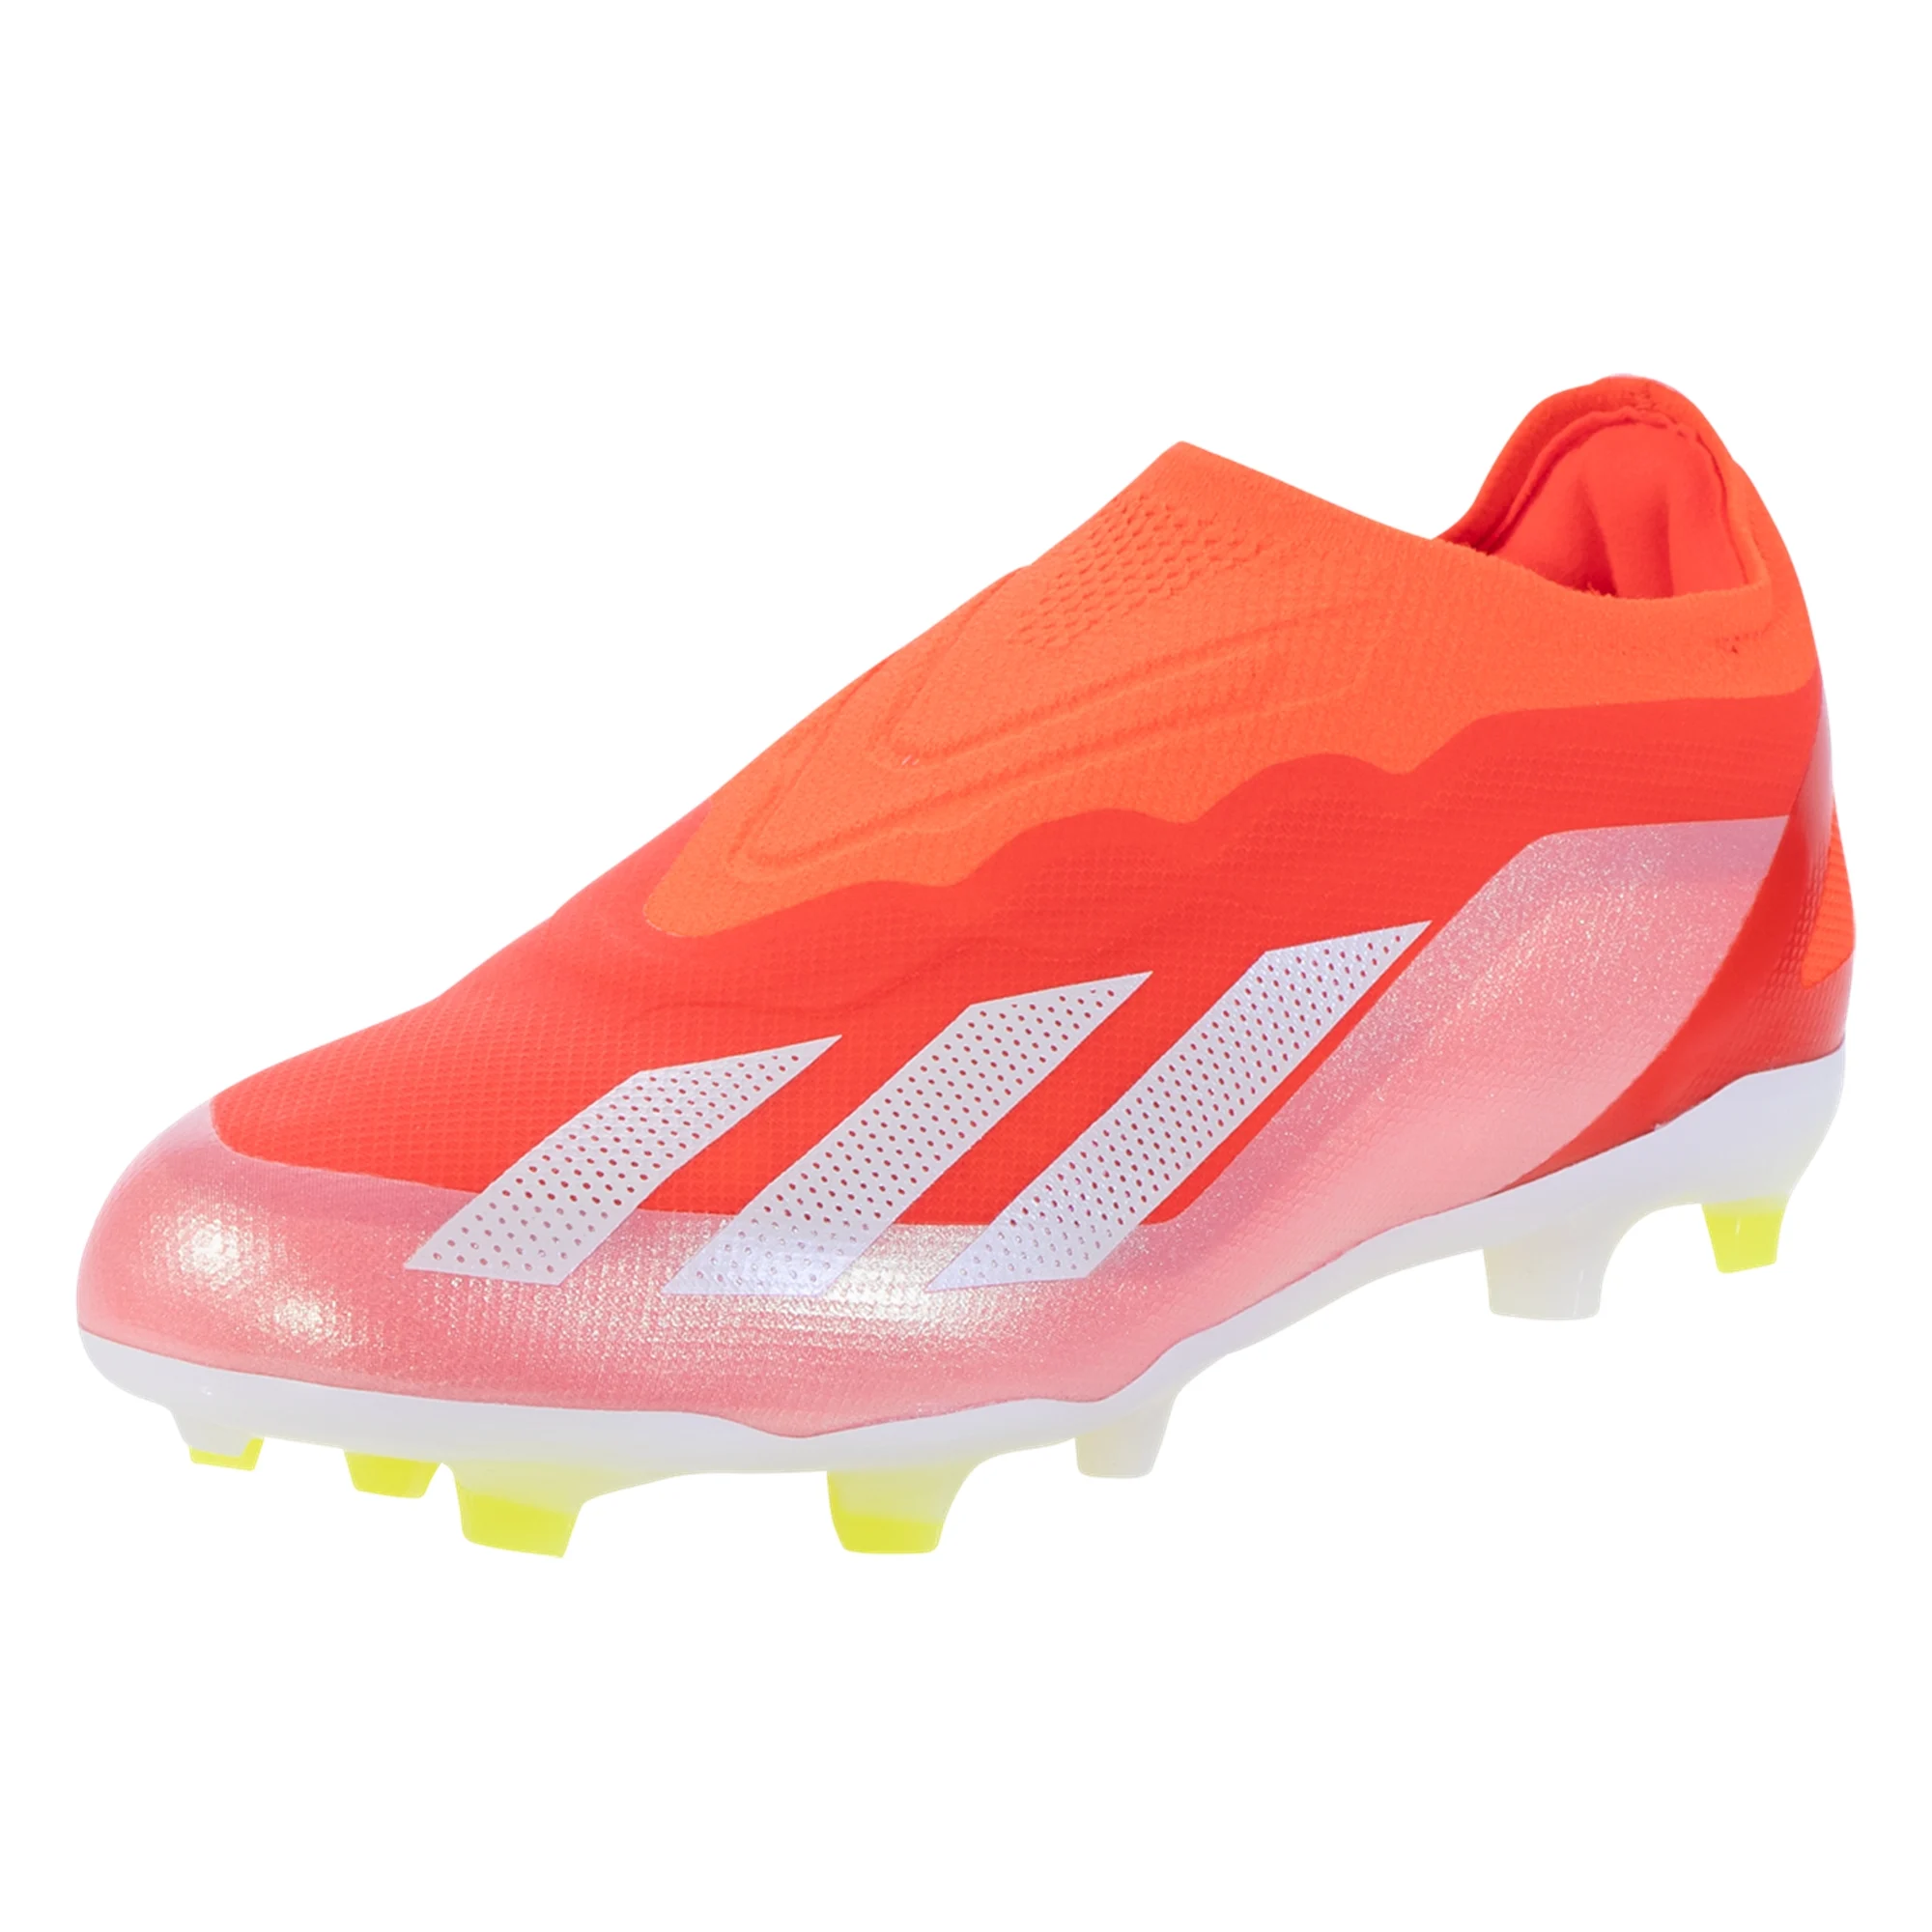 adidas Youth Soccer Footwear